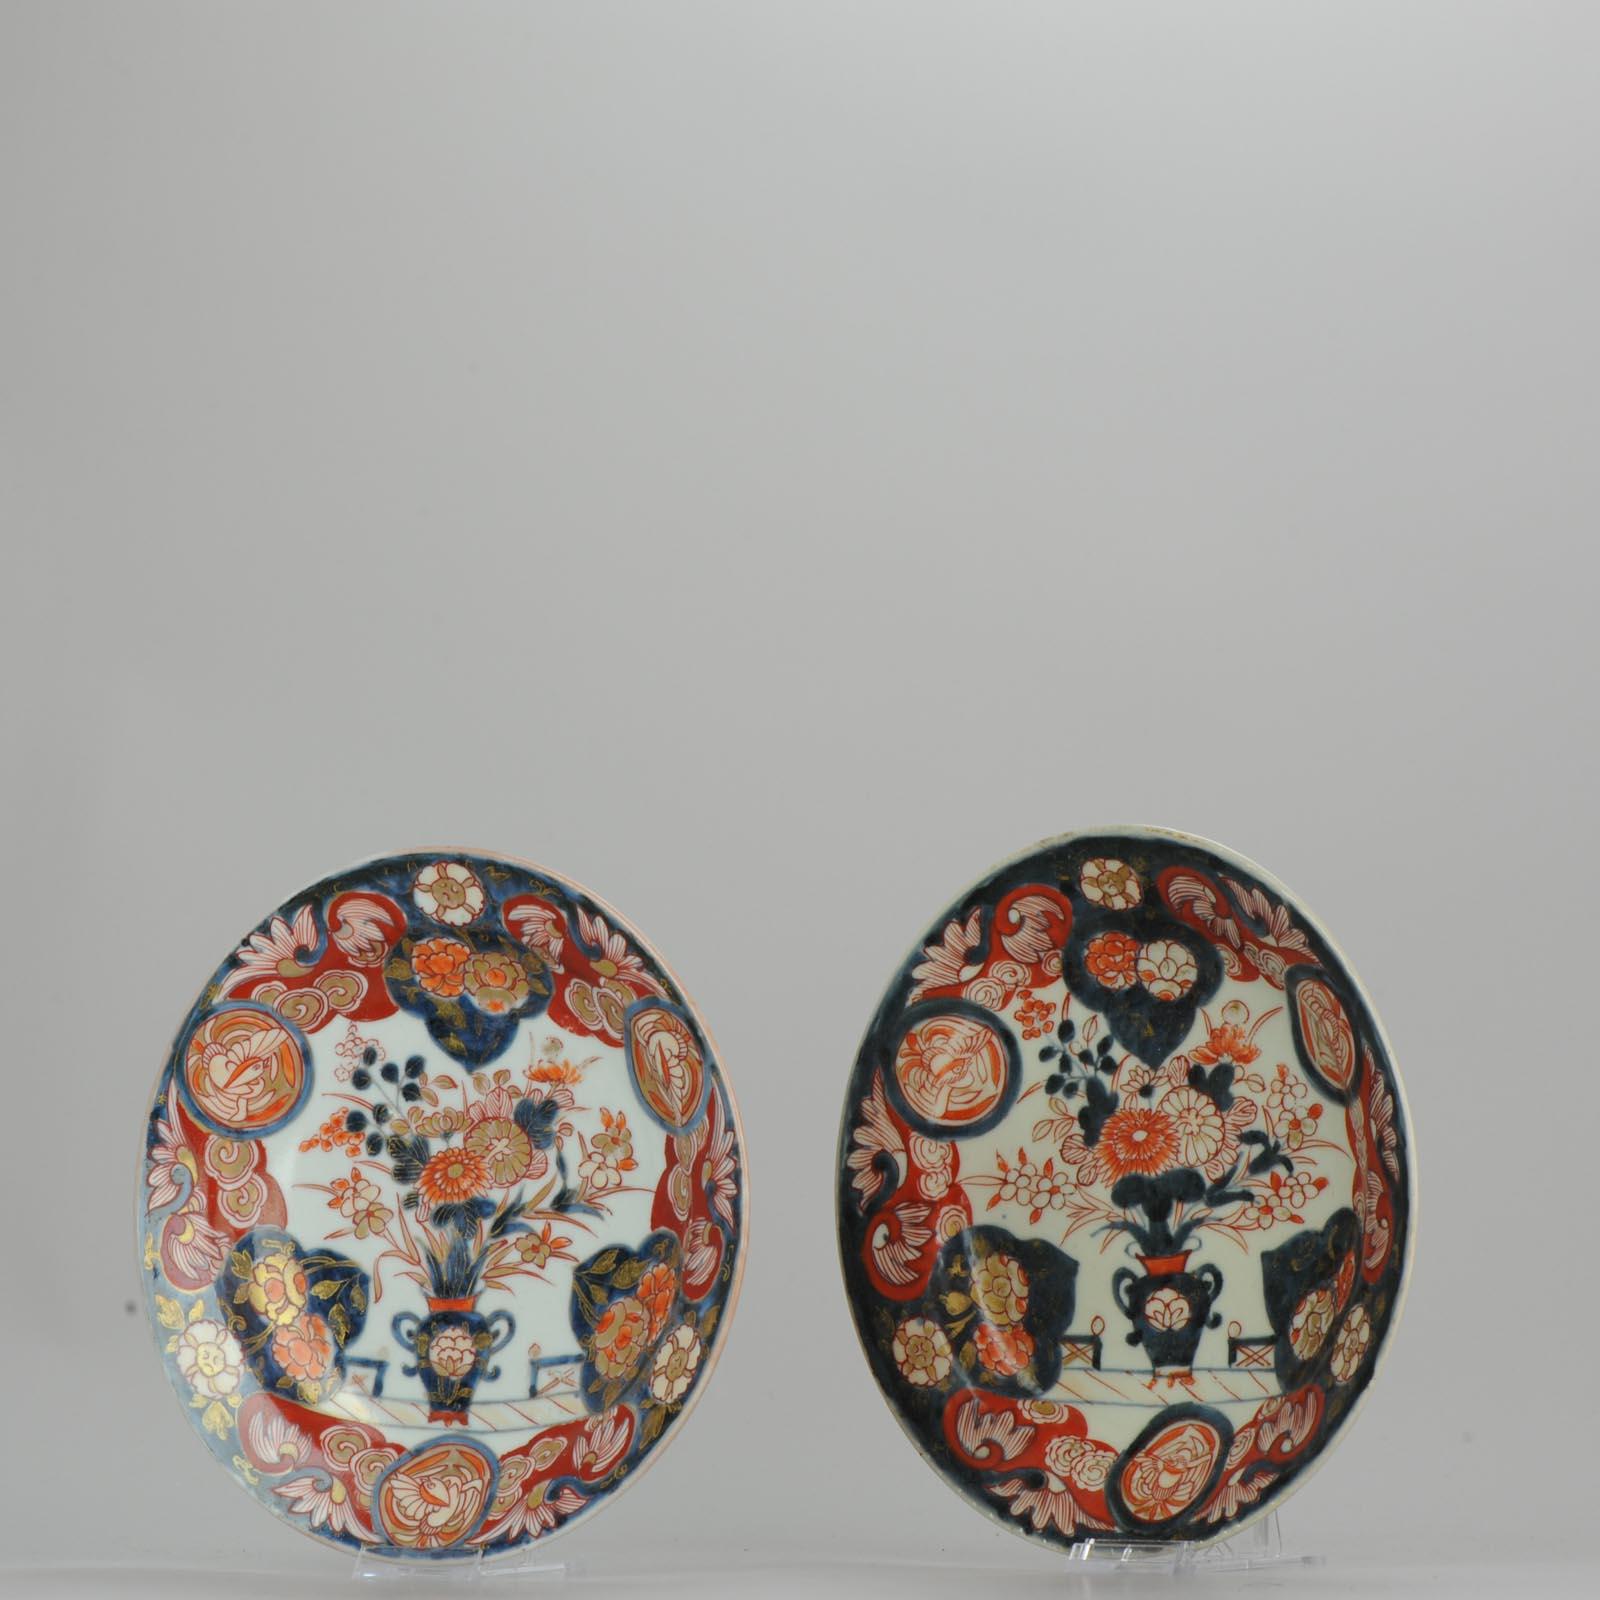 17th Century Antique circa 1700 Japanese Imari Porcelain Plates Arita Edo Flowers